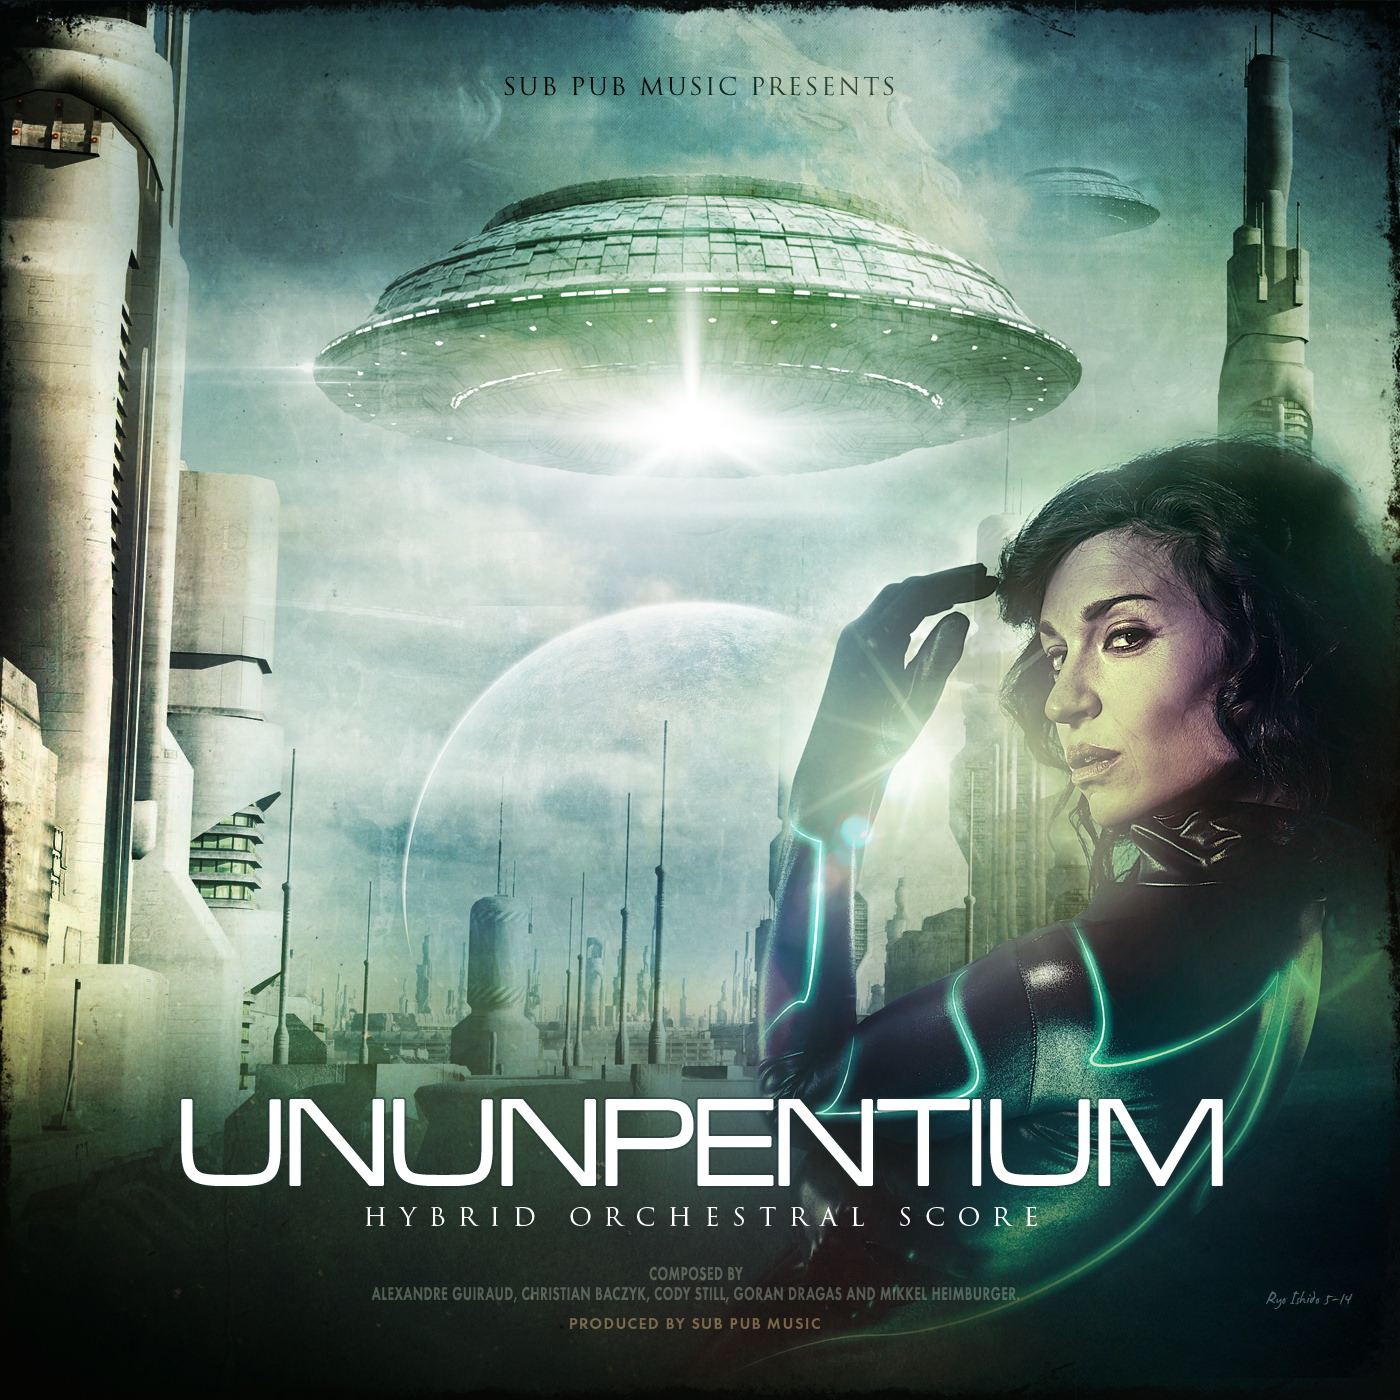 Copy of Sub Pub Music - Ununpentium - Cody Still - Composer - Music